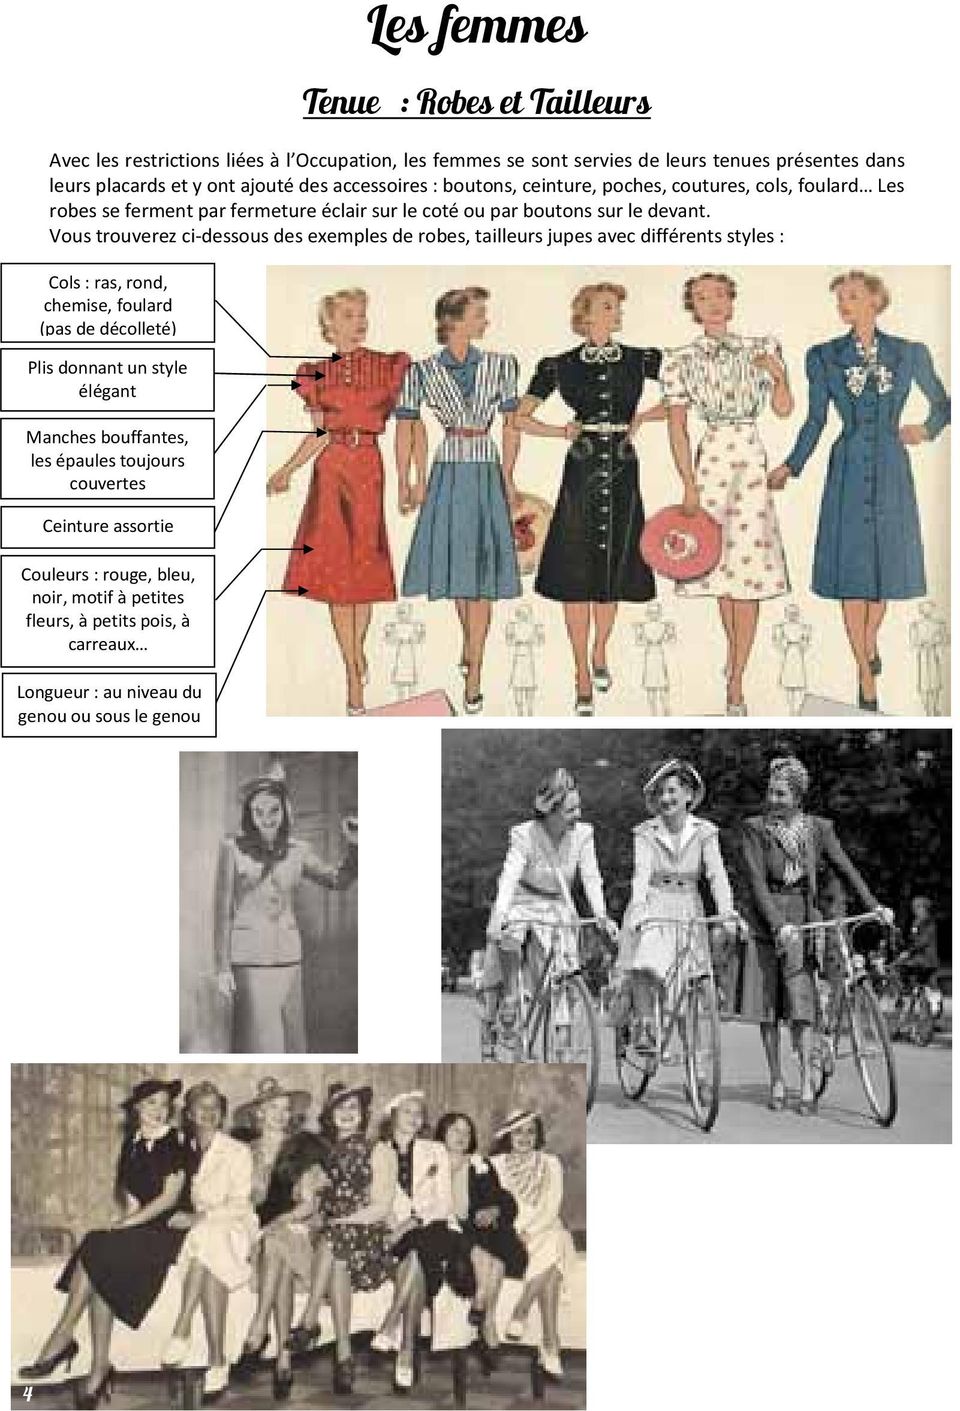 Vous trouverez ci-dessous des exemples de robes, tailleurs jupes avec différents styles : Cols : ras, rond, chemise, foulard (pas de décolleté) Plis donnant un style élégant